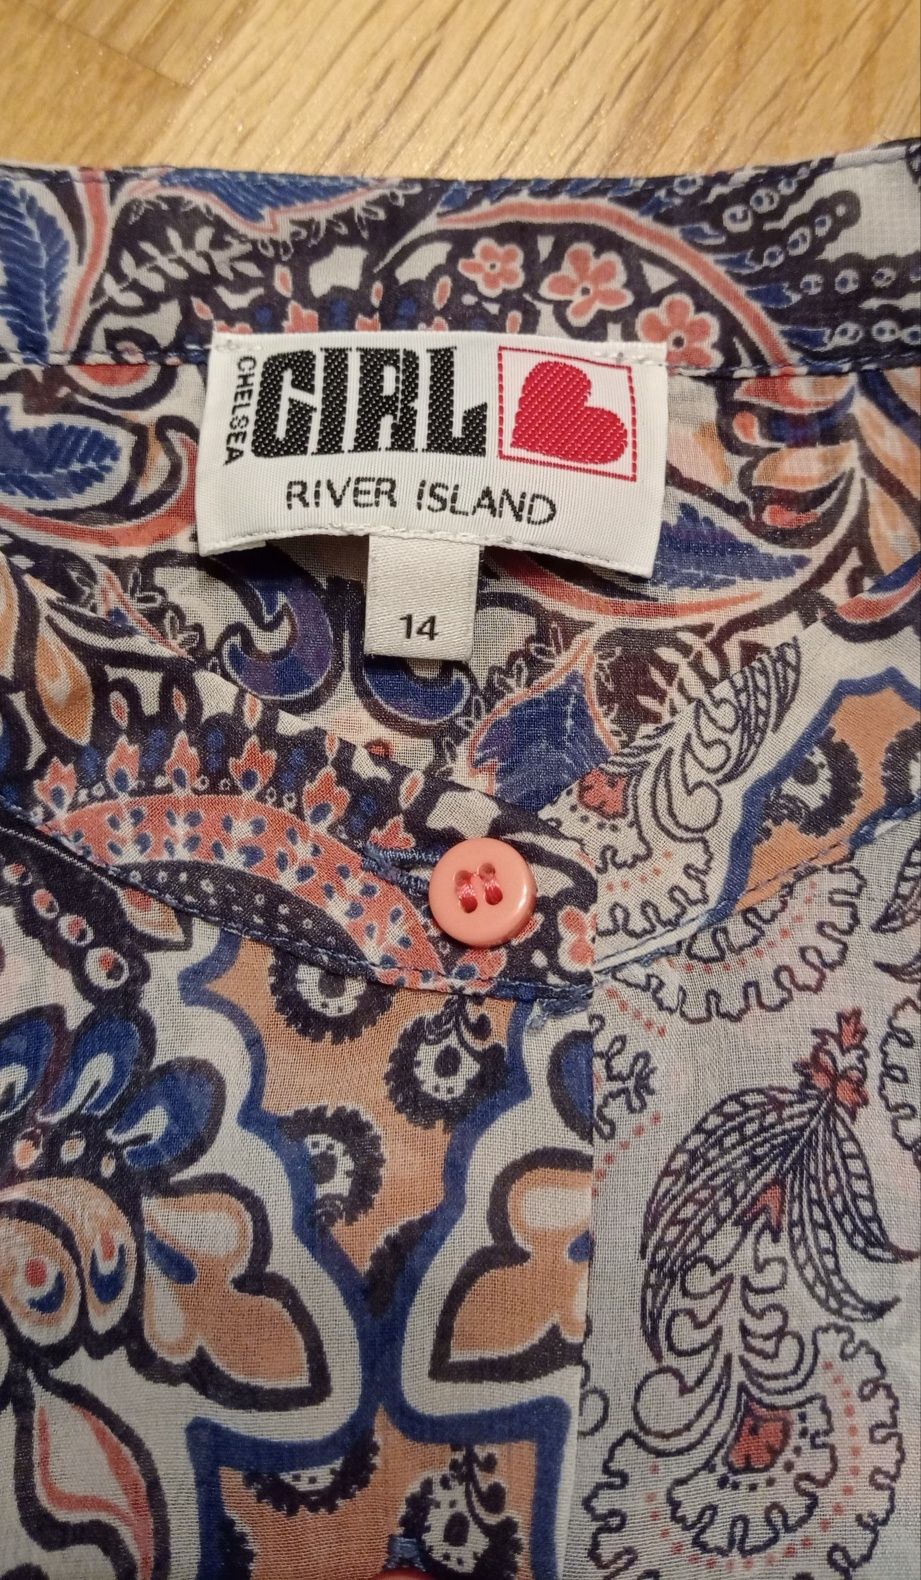 River Island lekka zwiewna kolorowa wzorzysta bluzka, r. 40